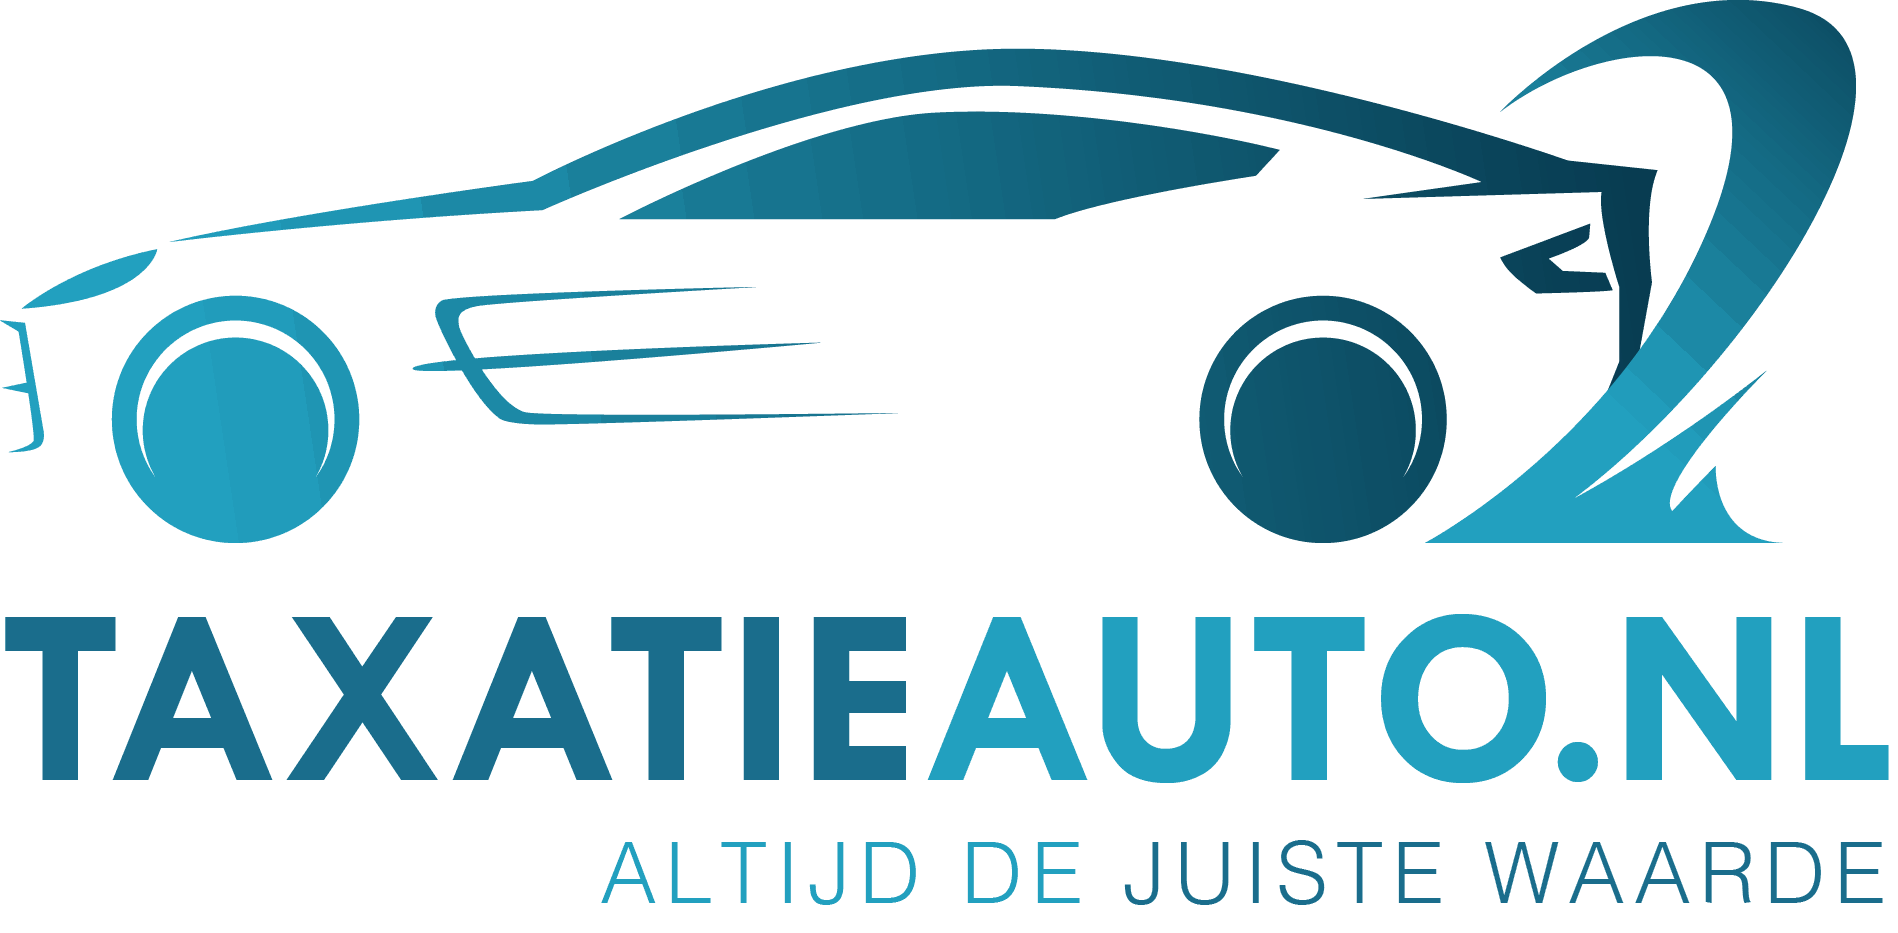 Autotaxatie